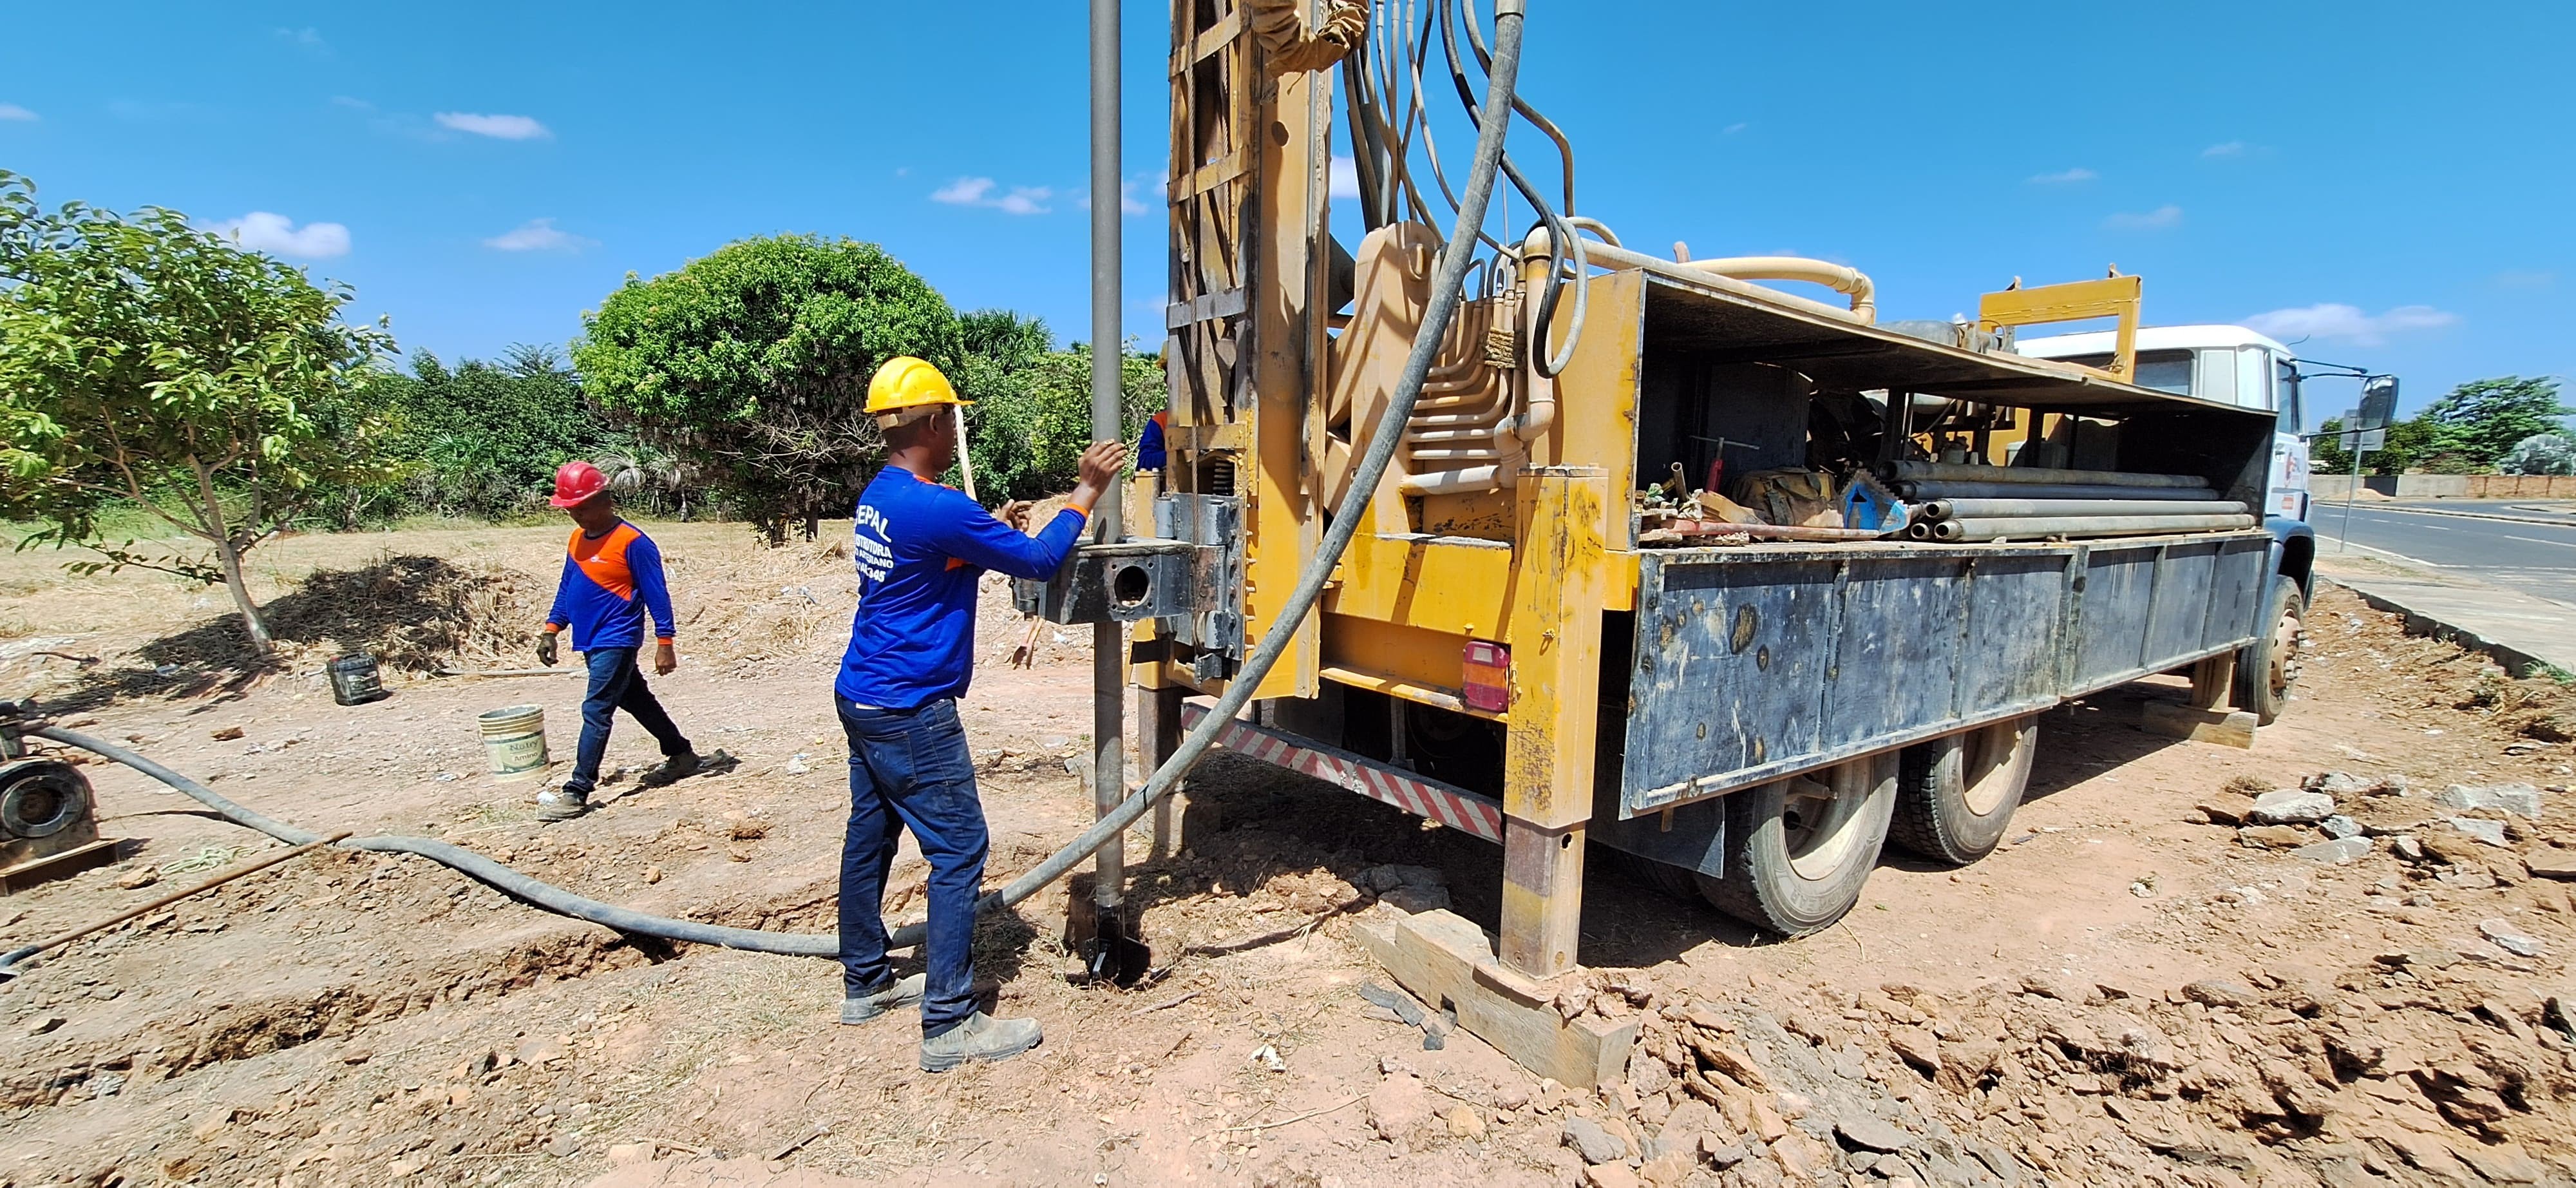 Caer inicia perfuração de poços artesianos para atender dois municípios sem água em Roraima